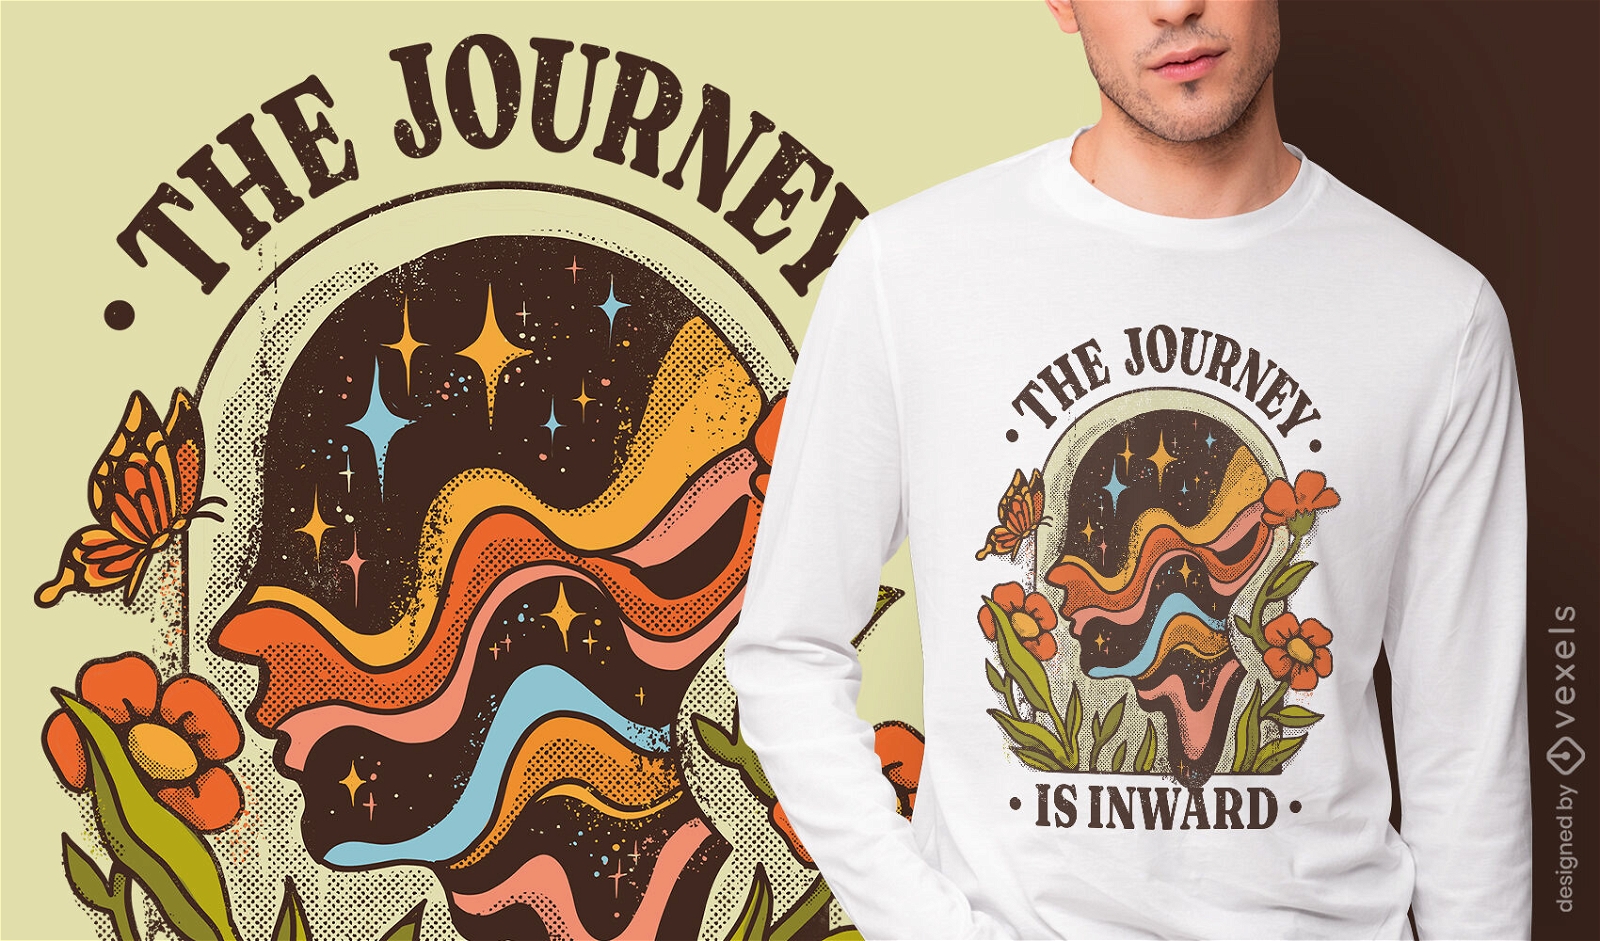 Motivierendes T-Shirt-Design für die Reise nach innen